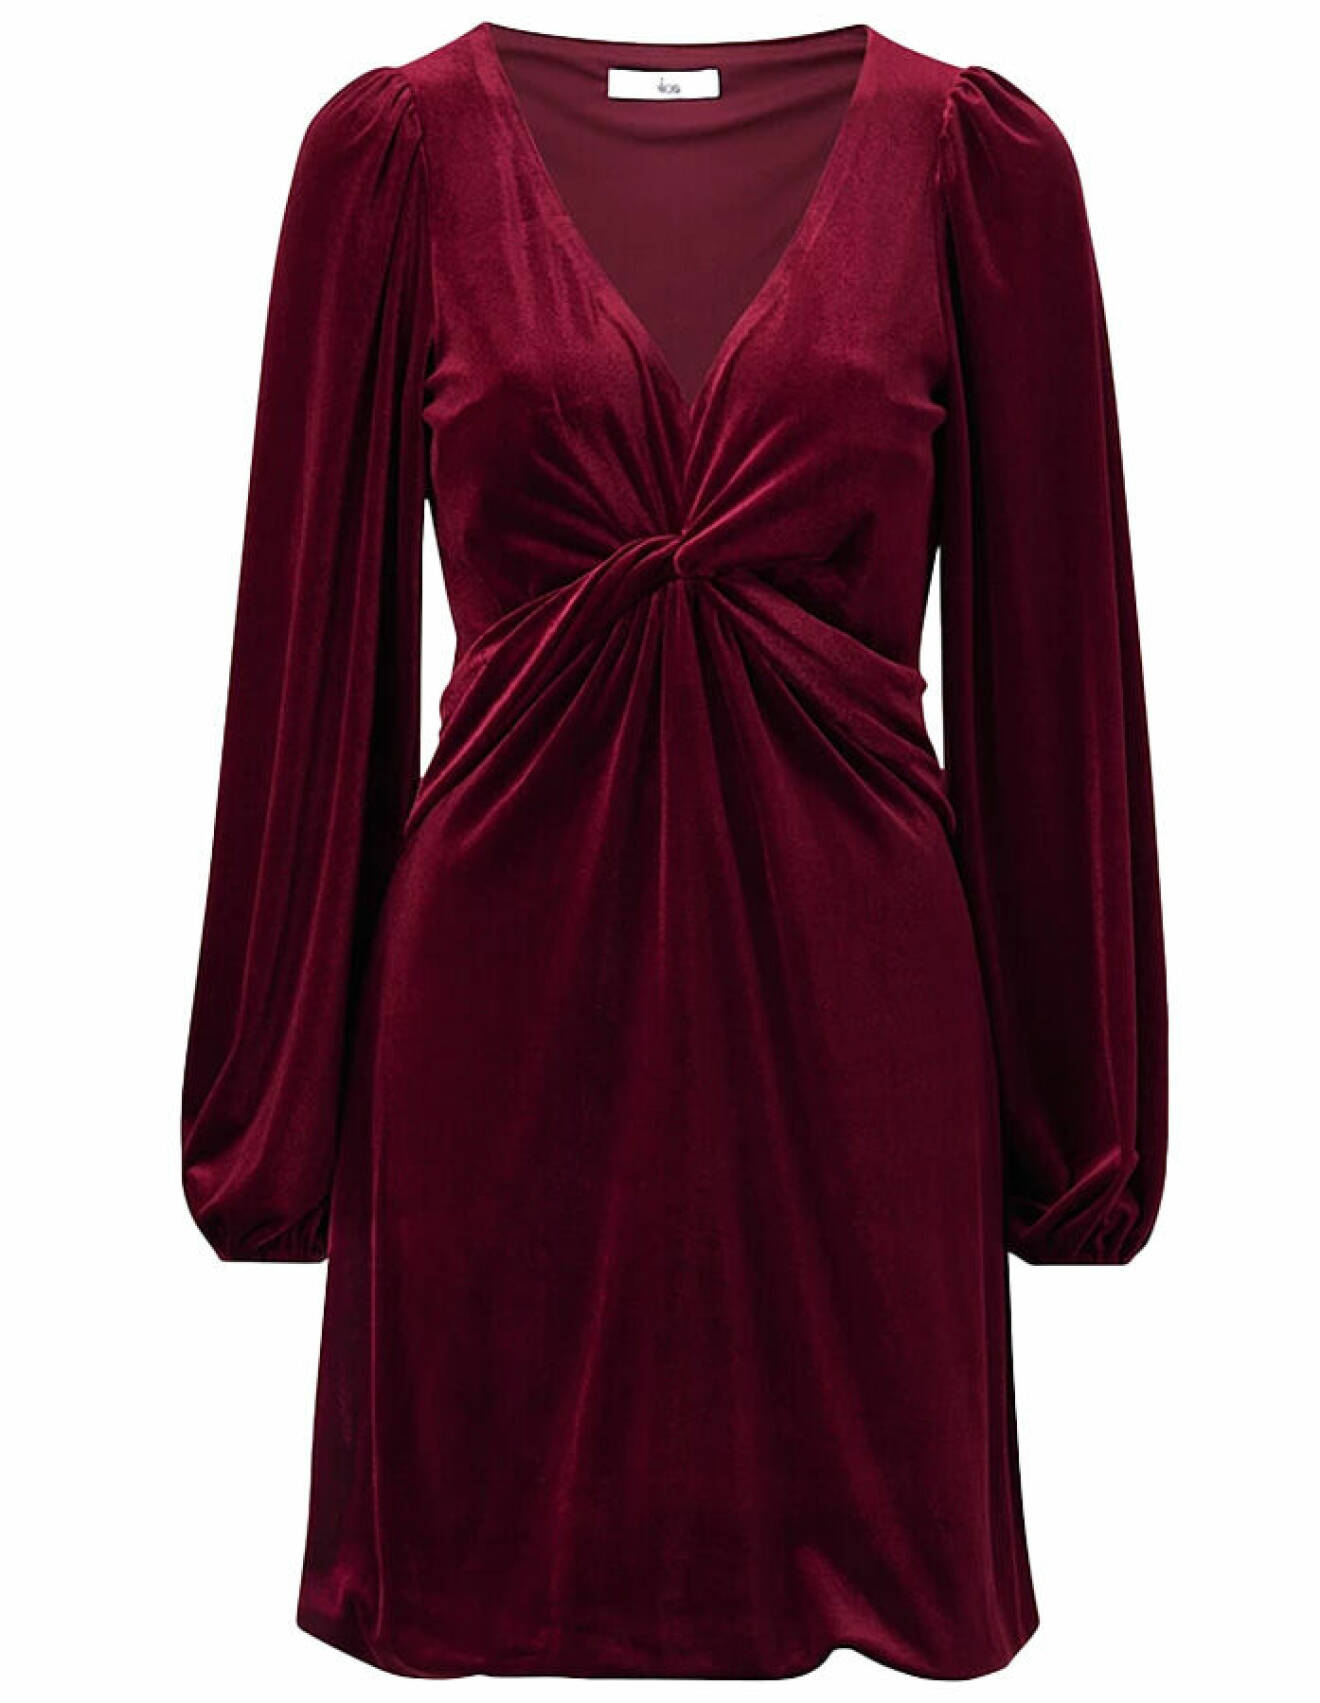 vinröd sammetsklänning med knytdetalj framtill och långa ärmar